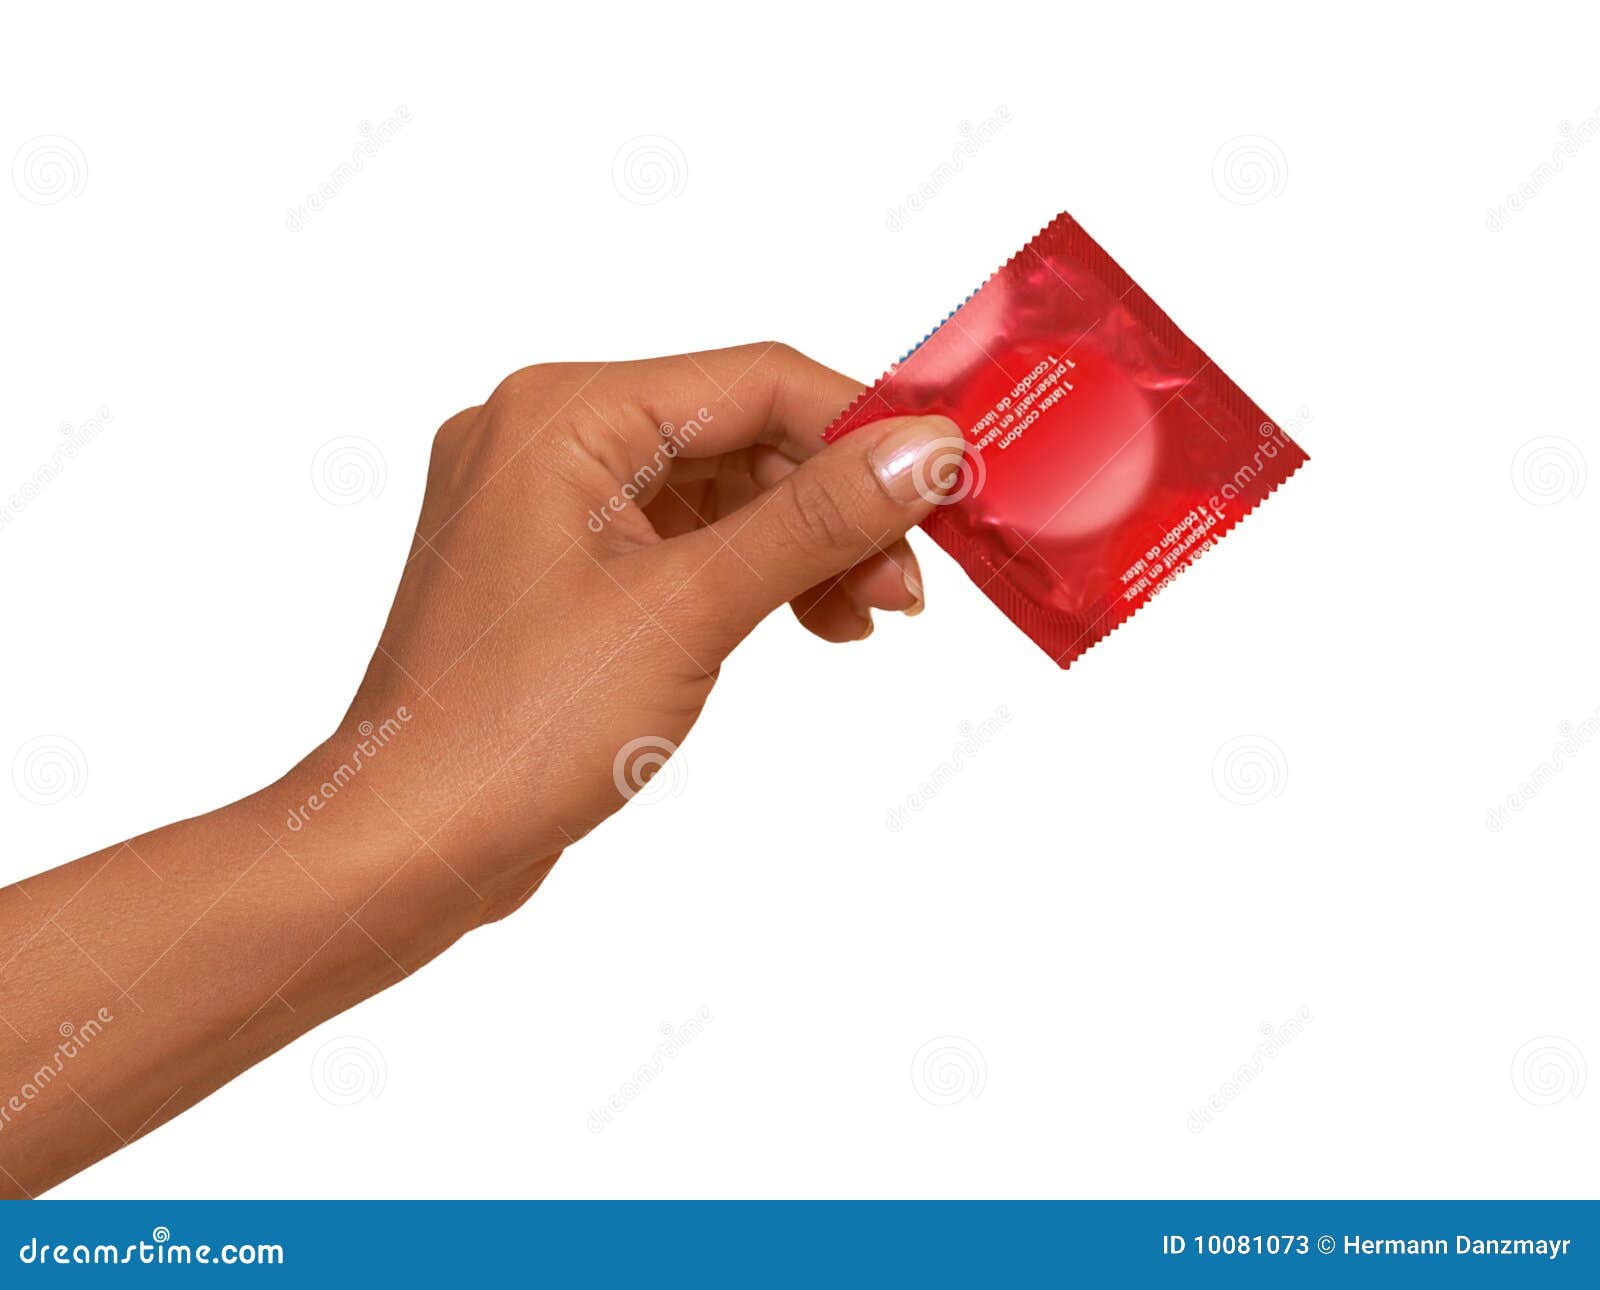 14 мифов о презервативах и их опровержение